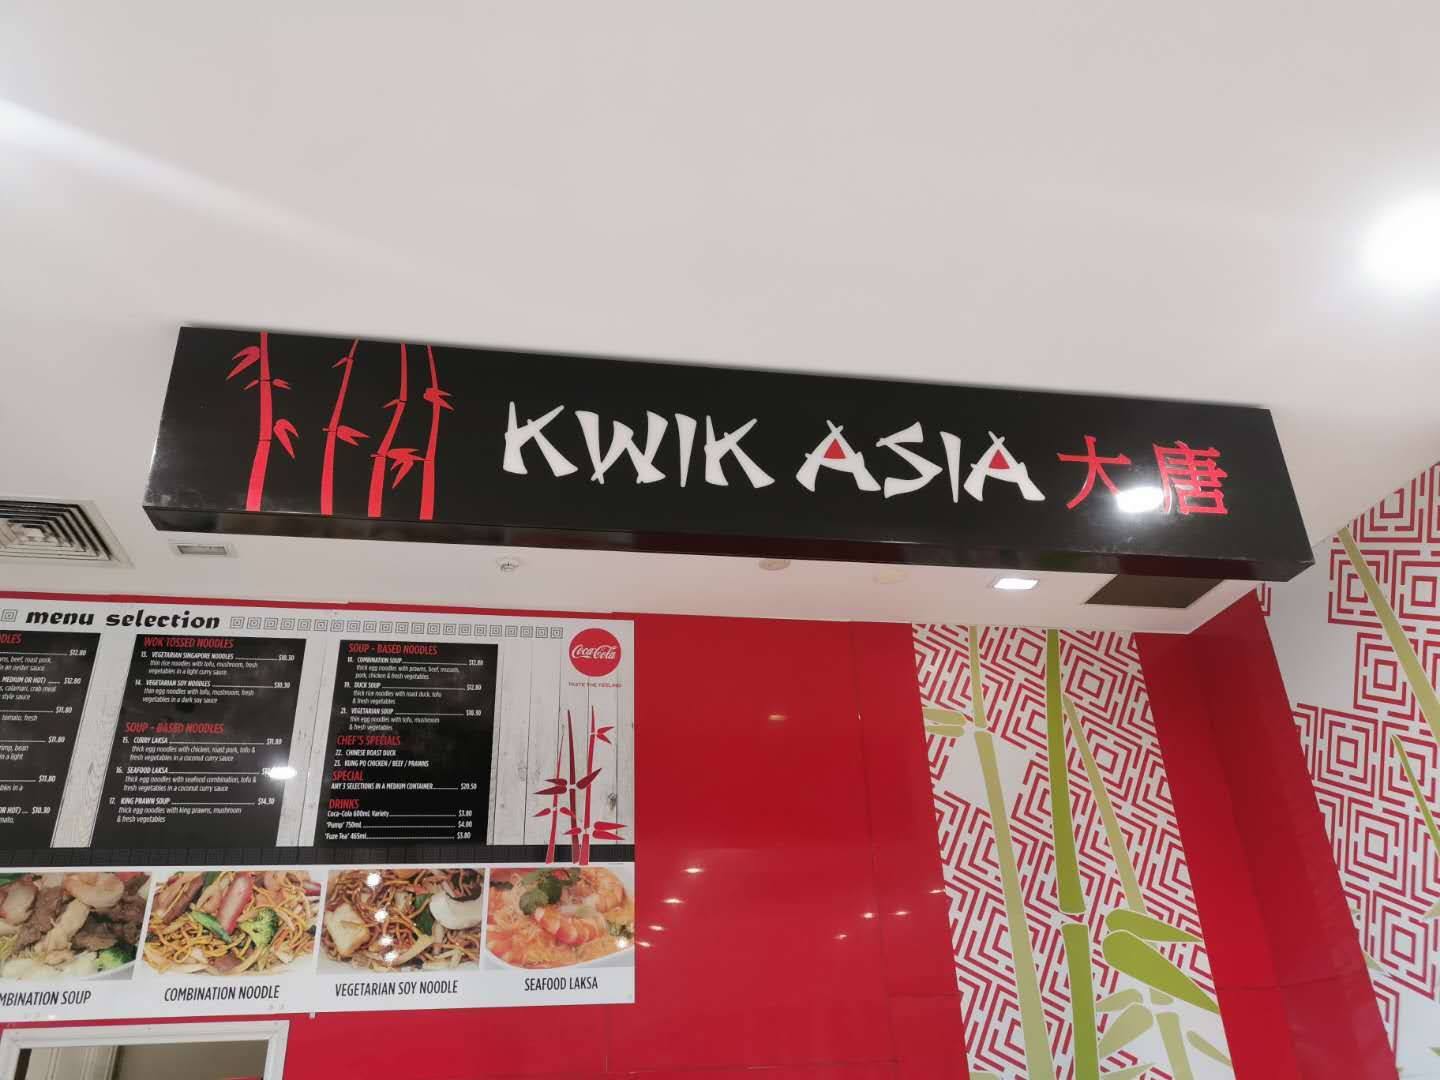 Kwik Asia